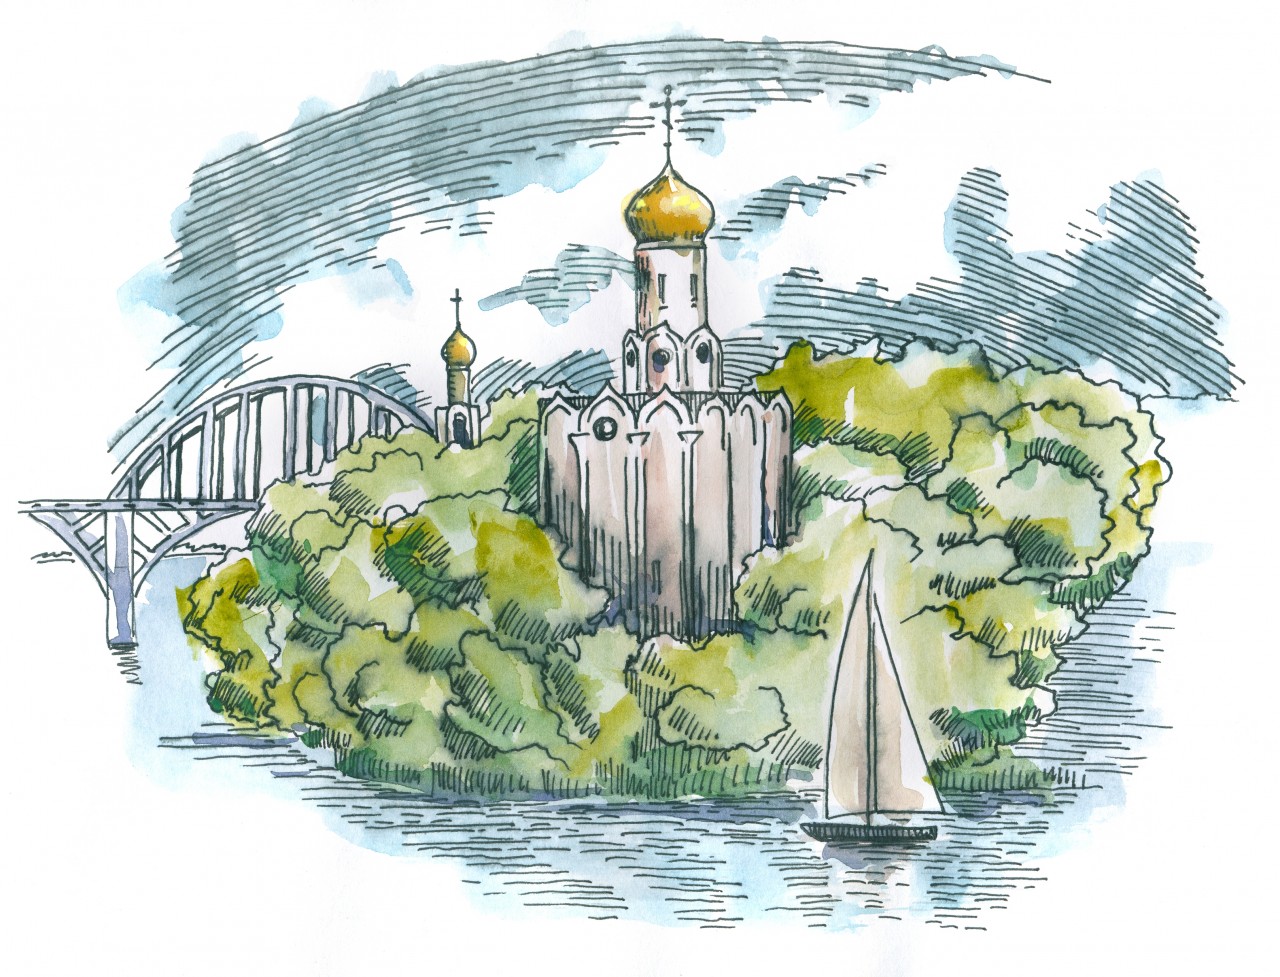 Киев рисунок